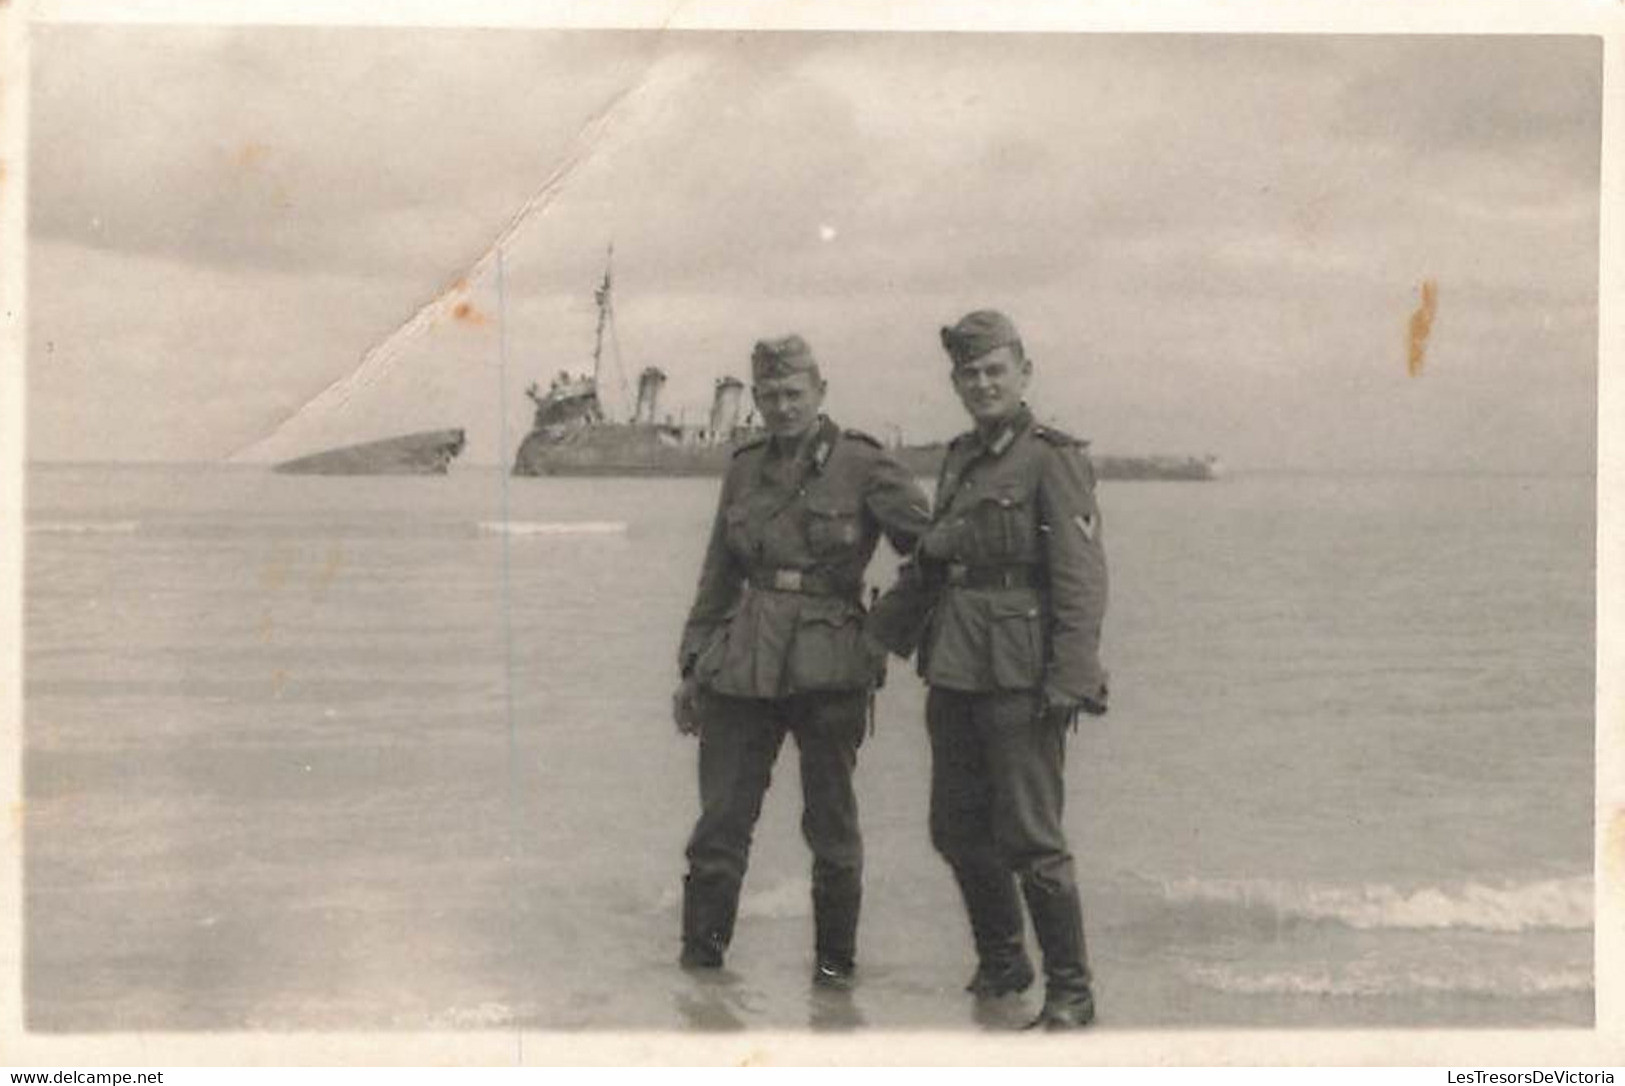 Lot de 32 petites photographies de soldats allemands à dunkerque - épave - bateau echoué - guerre -